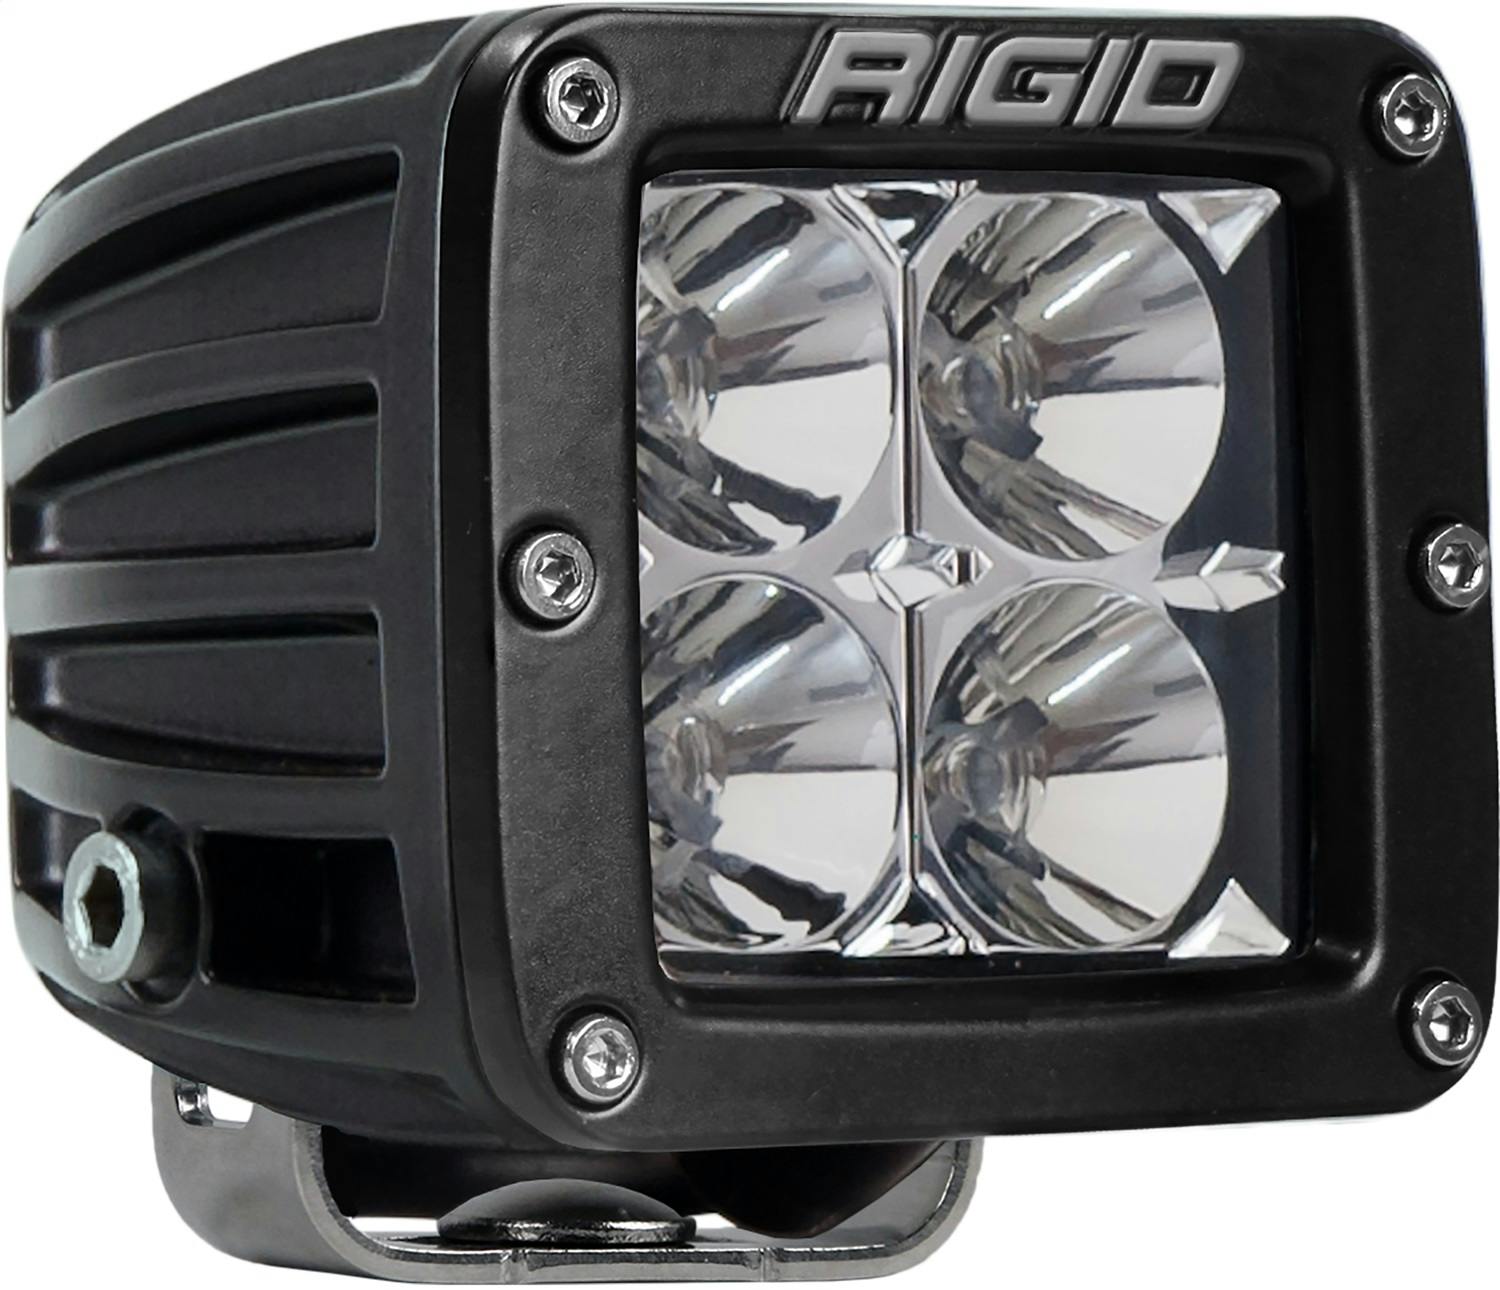 Rigid Industries 222113 D-Series Pro HD Flood Light